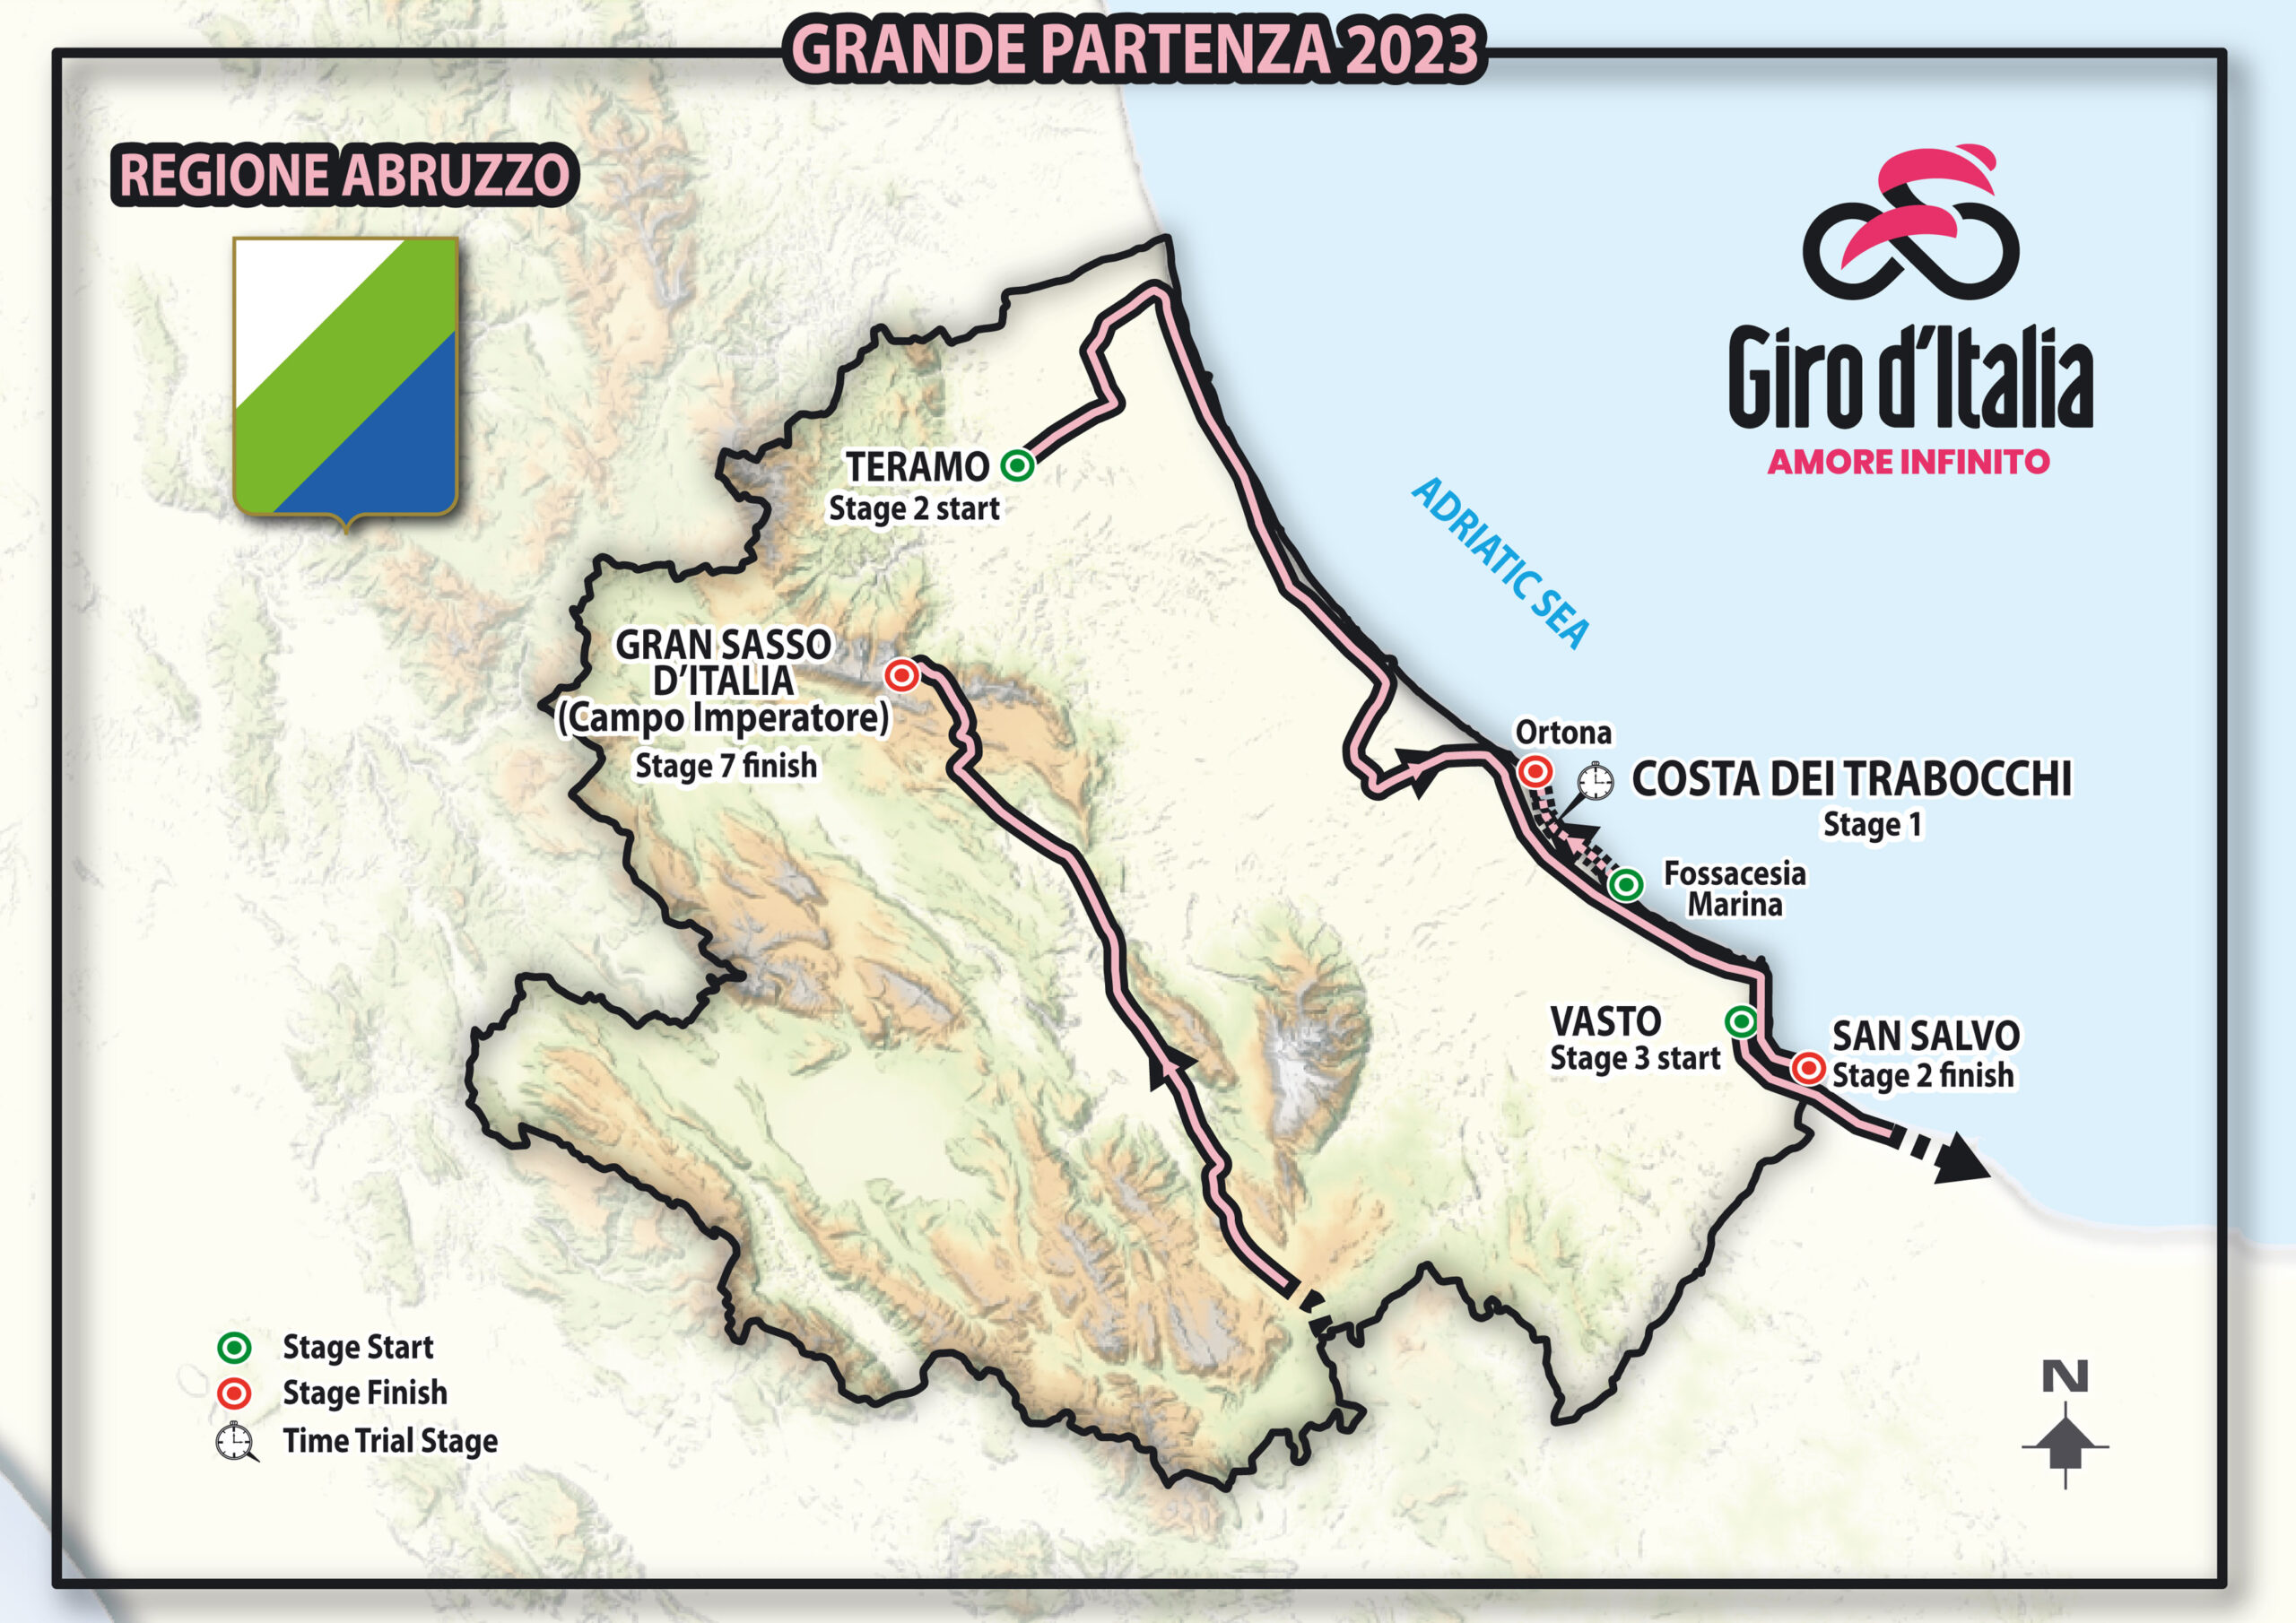 mapka Grande Partenza 2023